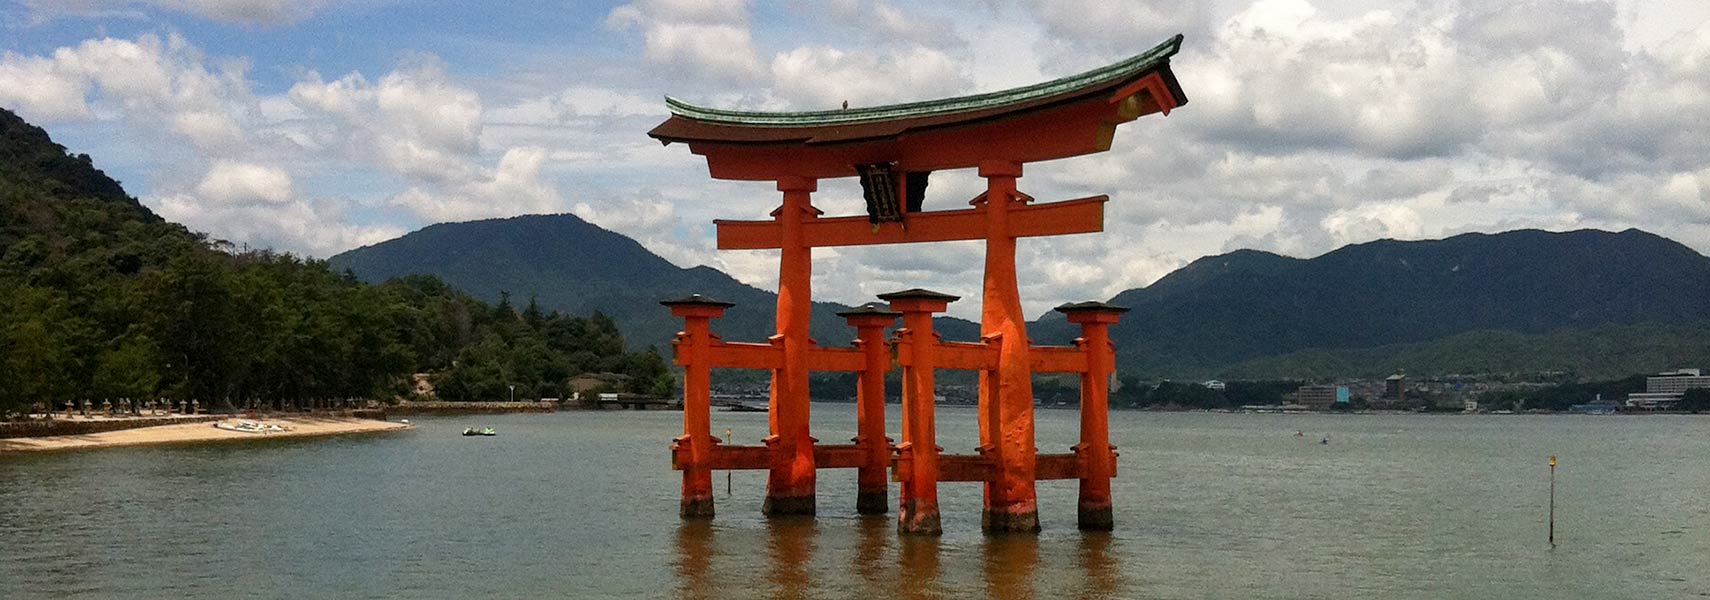 Itsukushima Torii (Japanese gate), Itsukushima island, Hiroshima